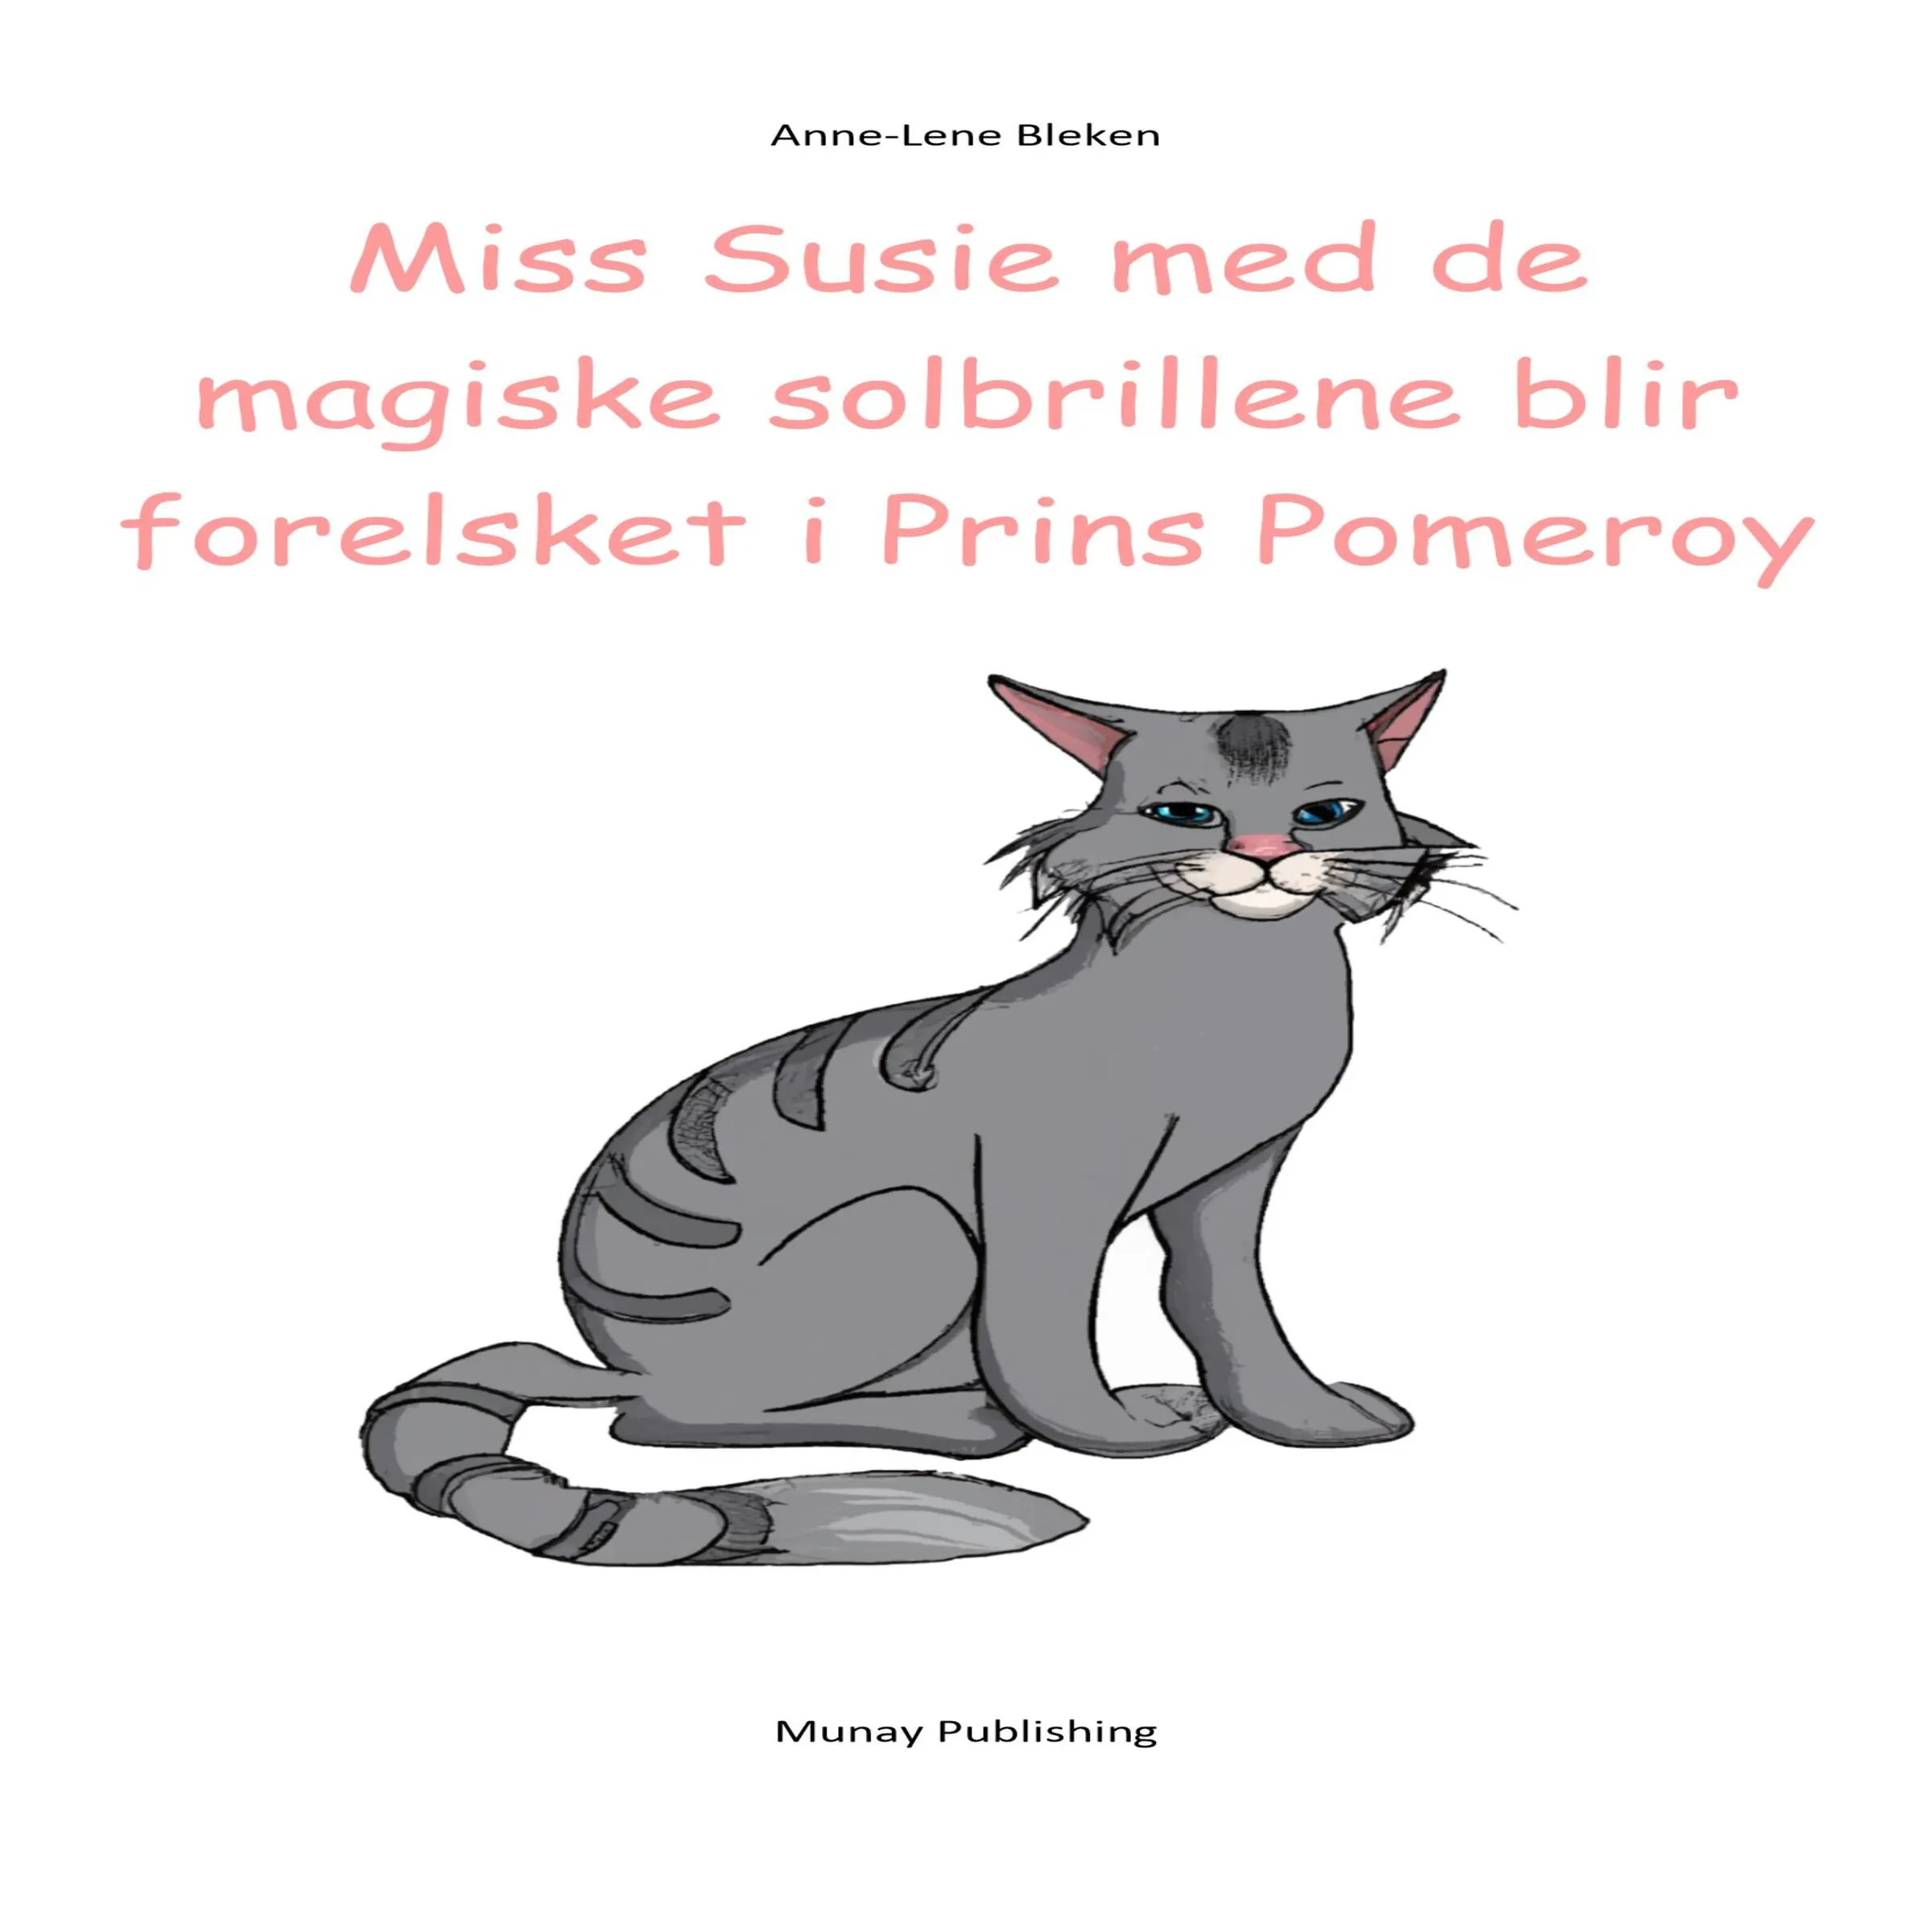 Miss Susie med de magiske solbrillene blir forelsket i Prins Pomeroy by Anne-Lene Bleken Audiobook